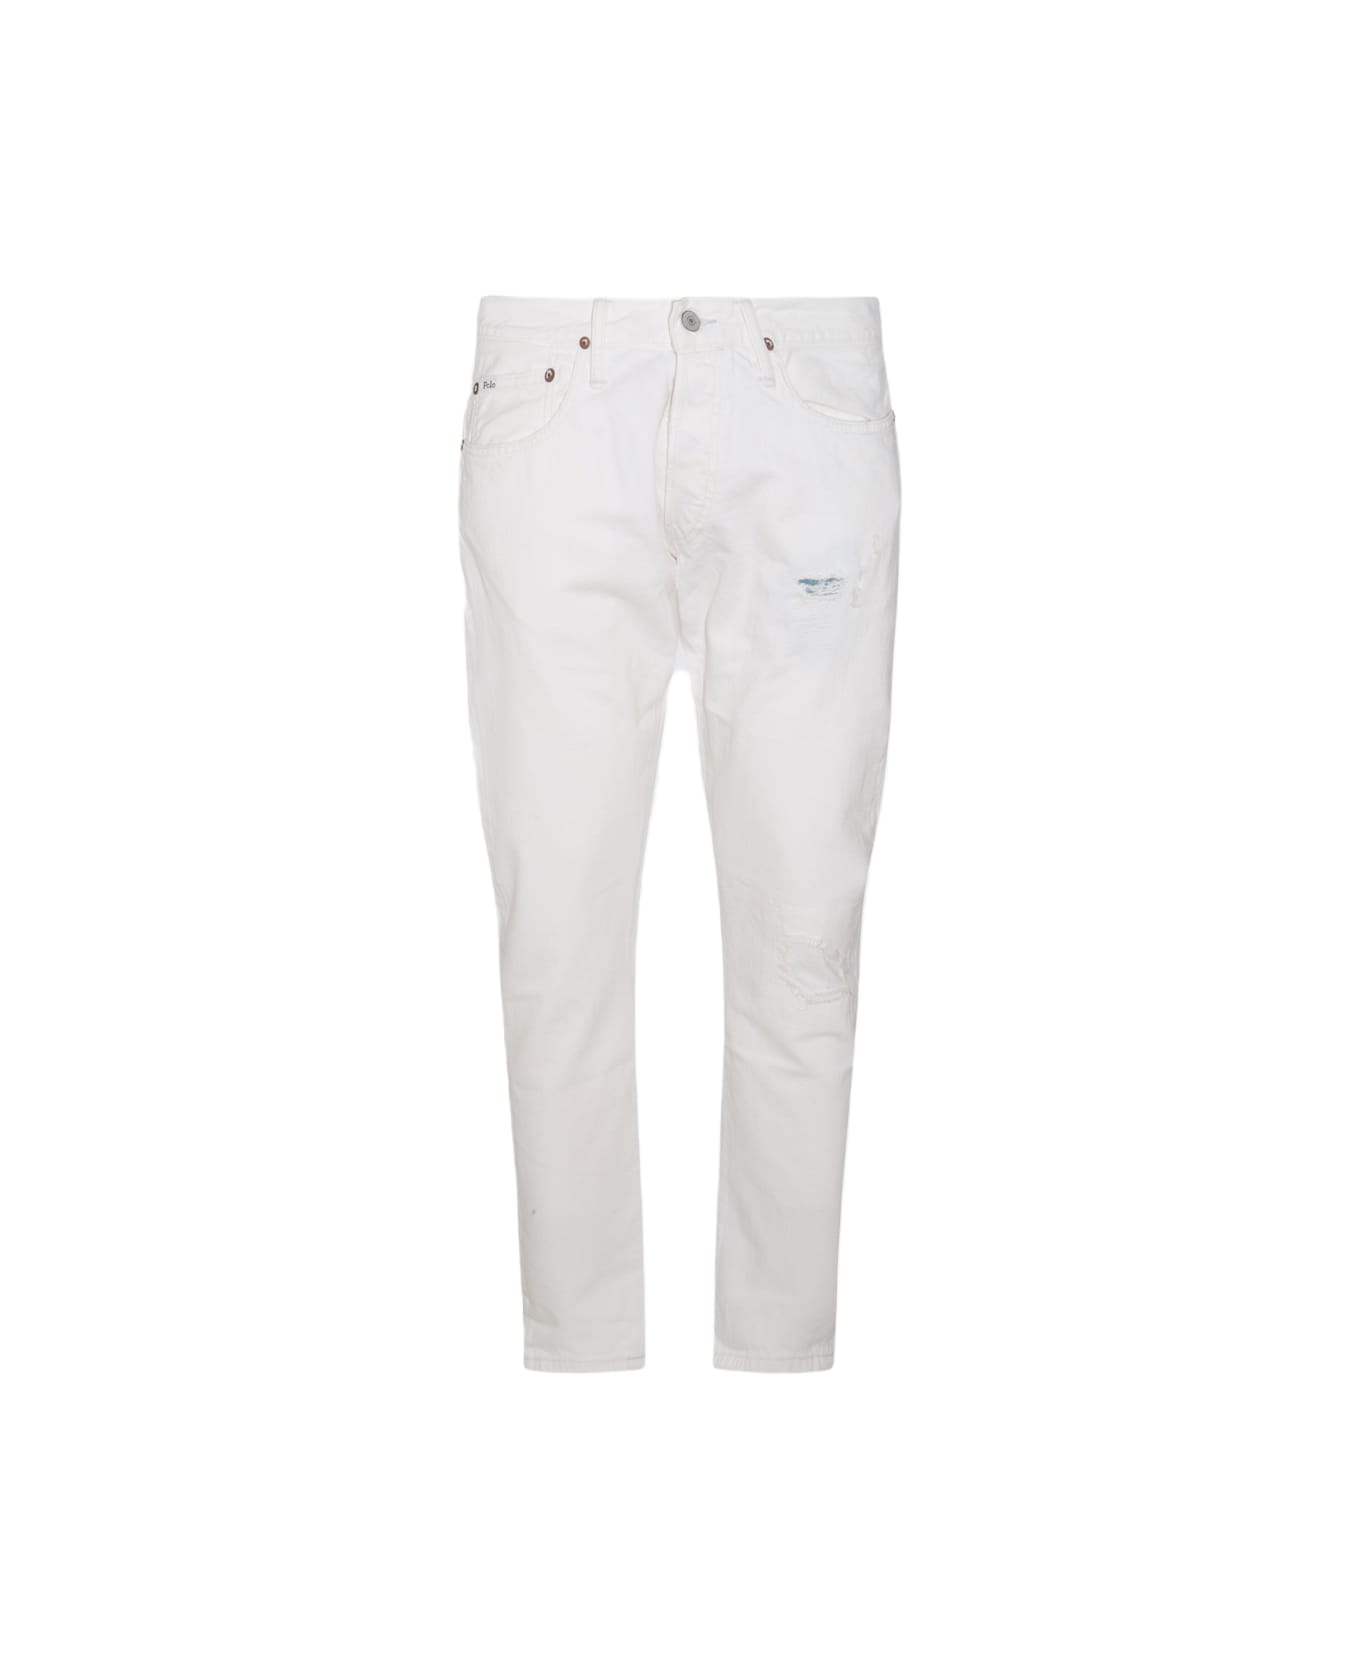 Polo Ralph Lauren White Cotton Denim Jeans - GLENGATE V2 デニム